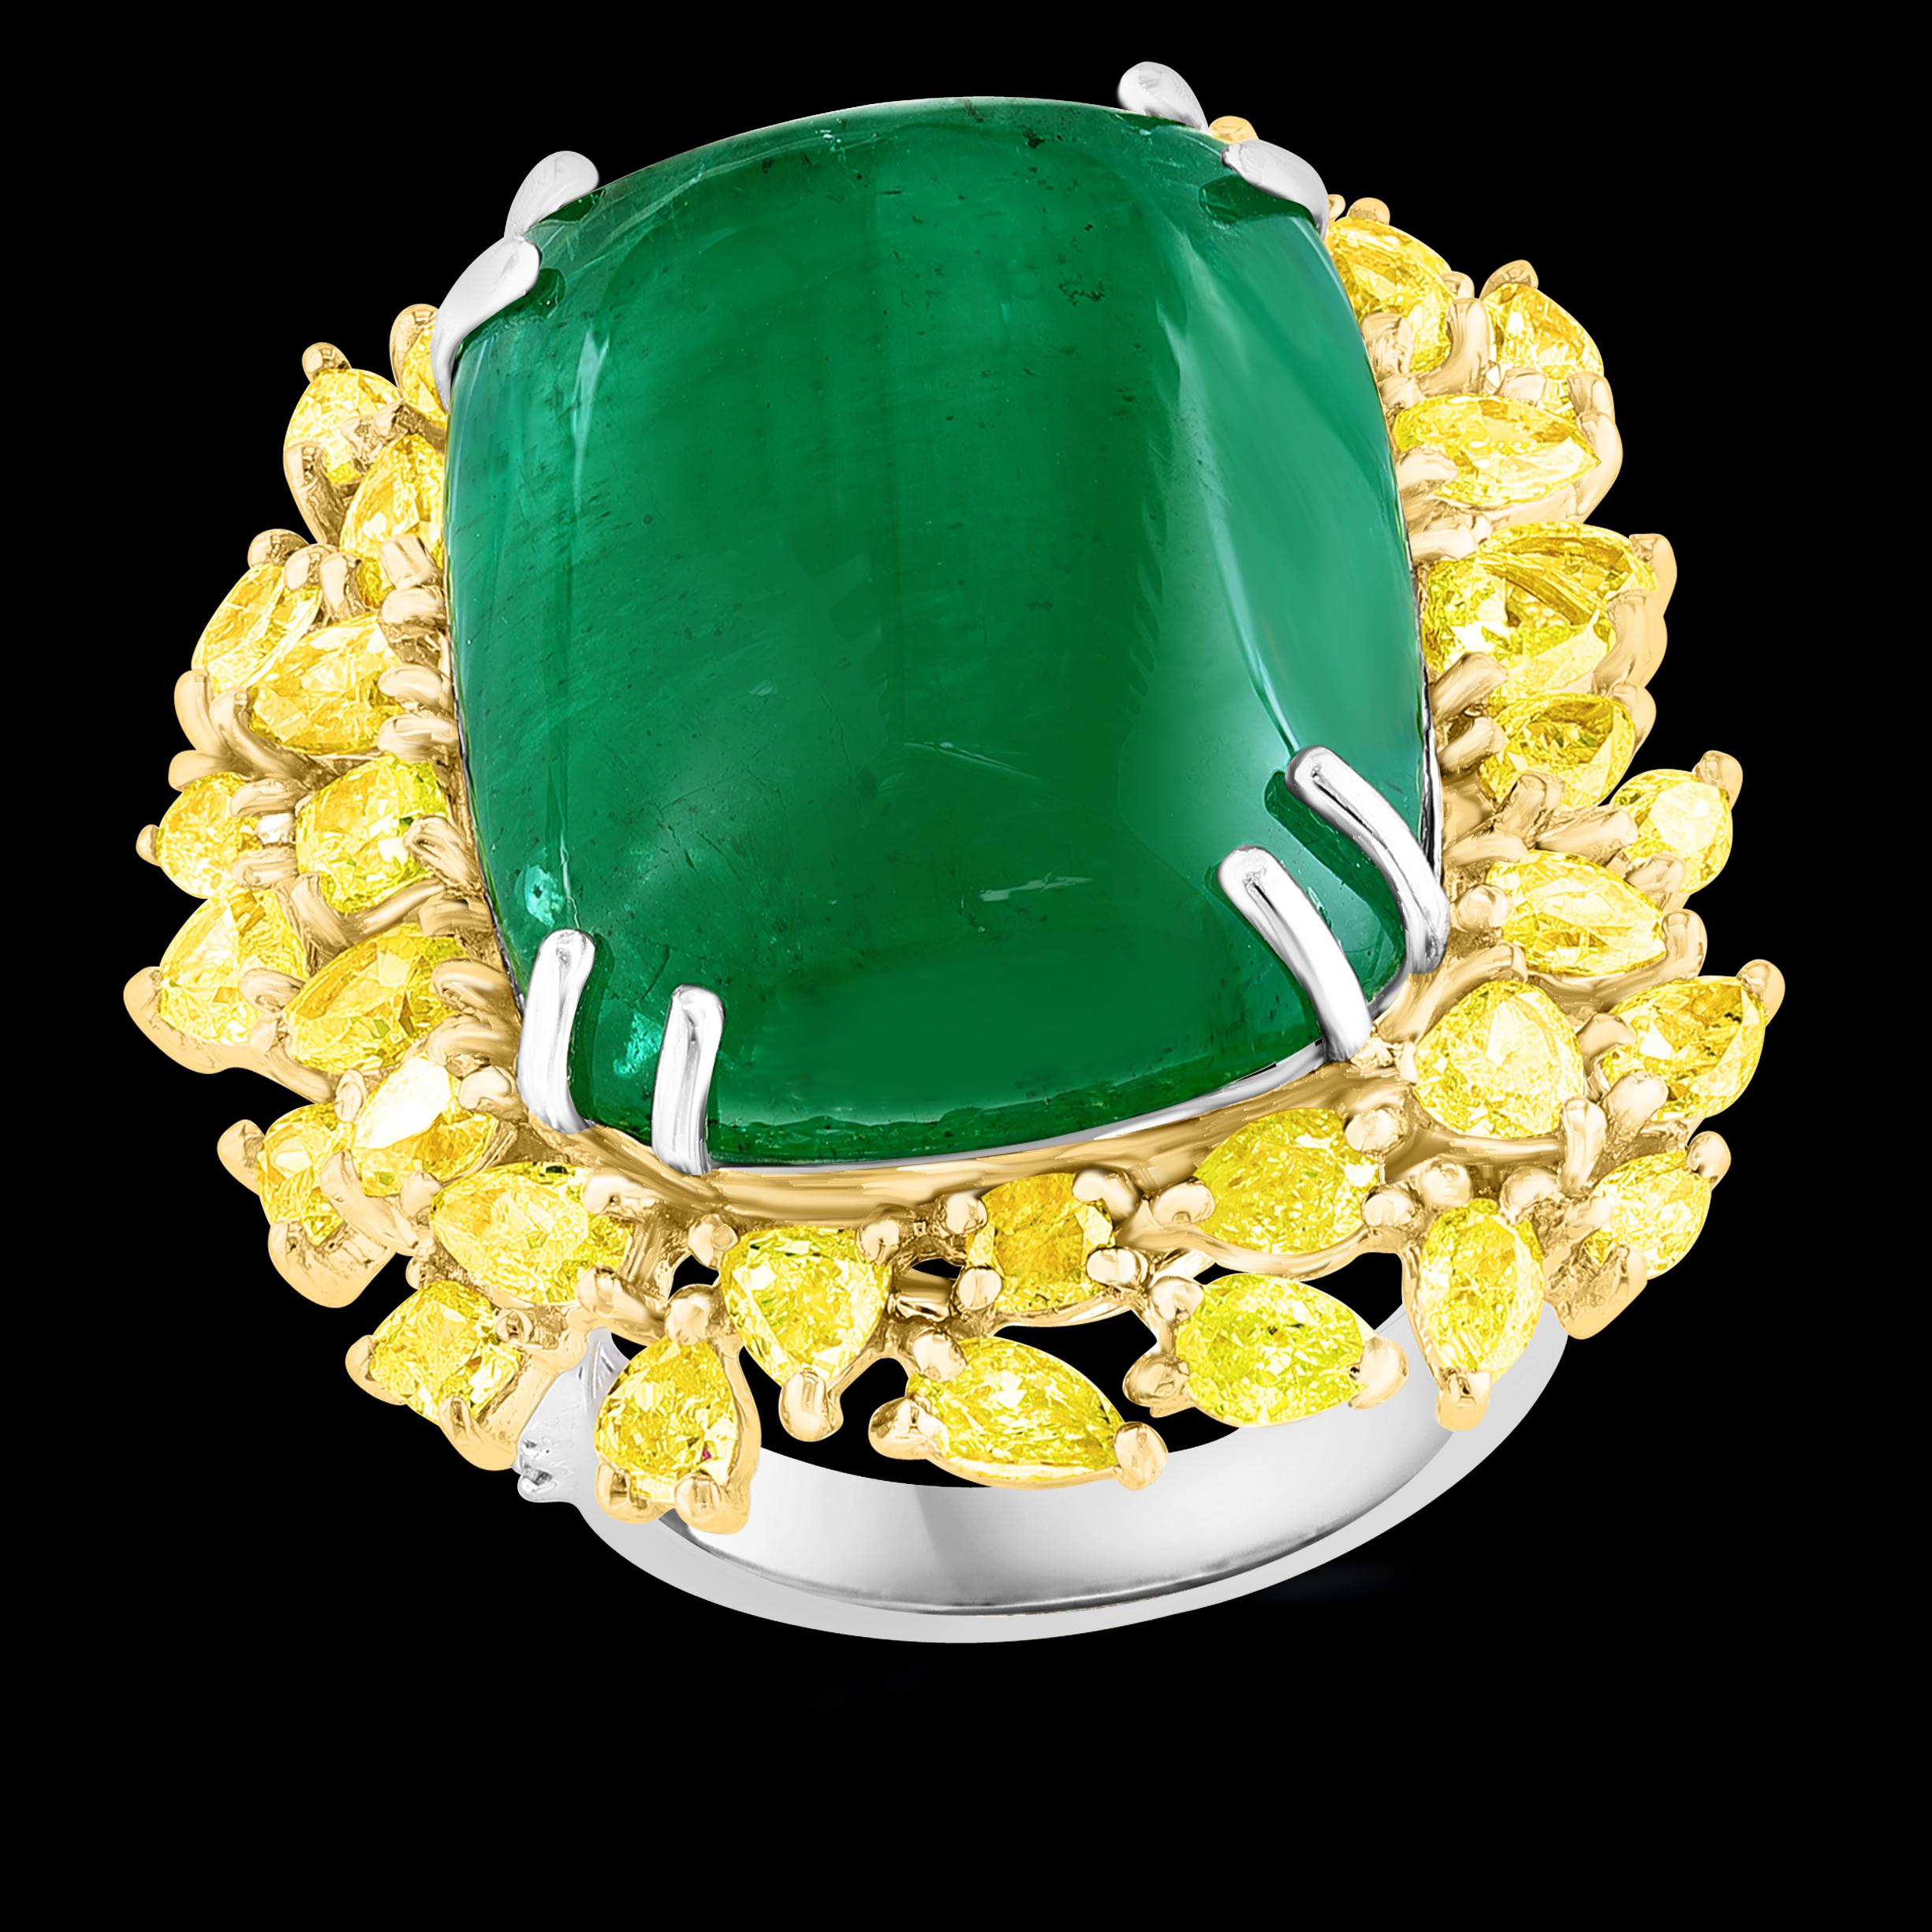 Ein klassischer Cocktail-Ring 
27,89 Karat natürlicher kolumbianischer Smaragd-Cabochon & 5,73 Karat  Gelber Diamantring 18 Karat zweifarbiges Gold 
Genau  27.89  Carat Natural Cabochon Emerald Ring in 18 Karat Gelb und Weiß  Gold mit 5,73 Karat